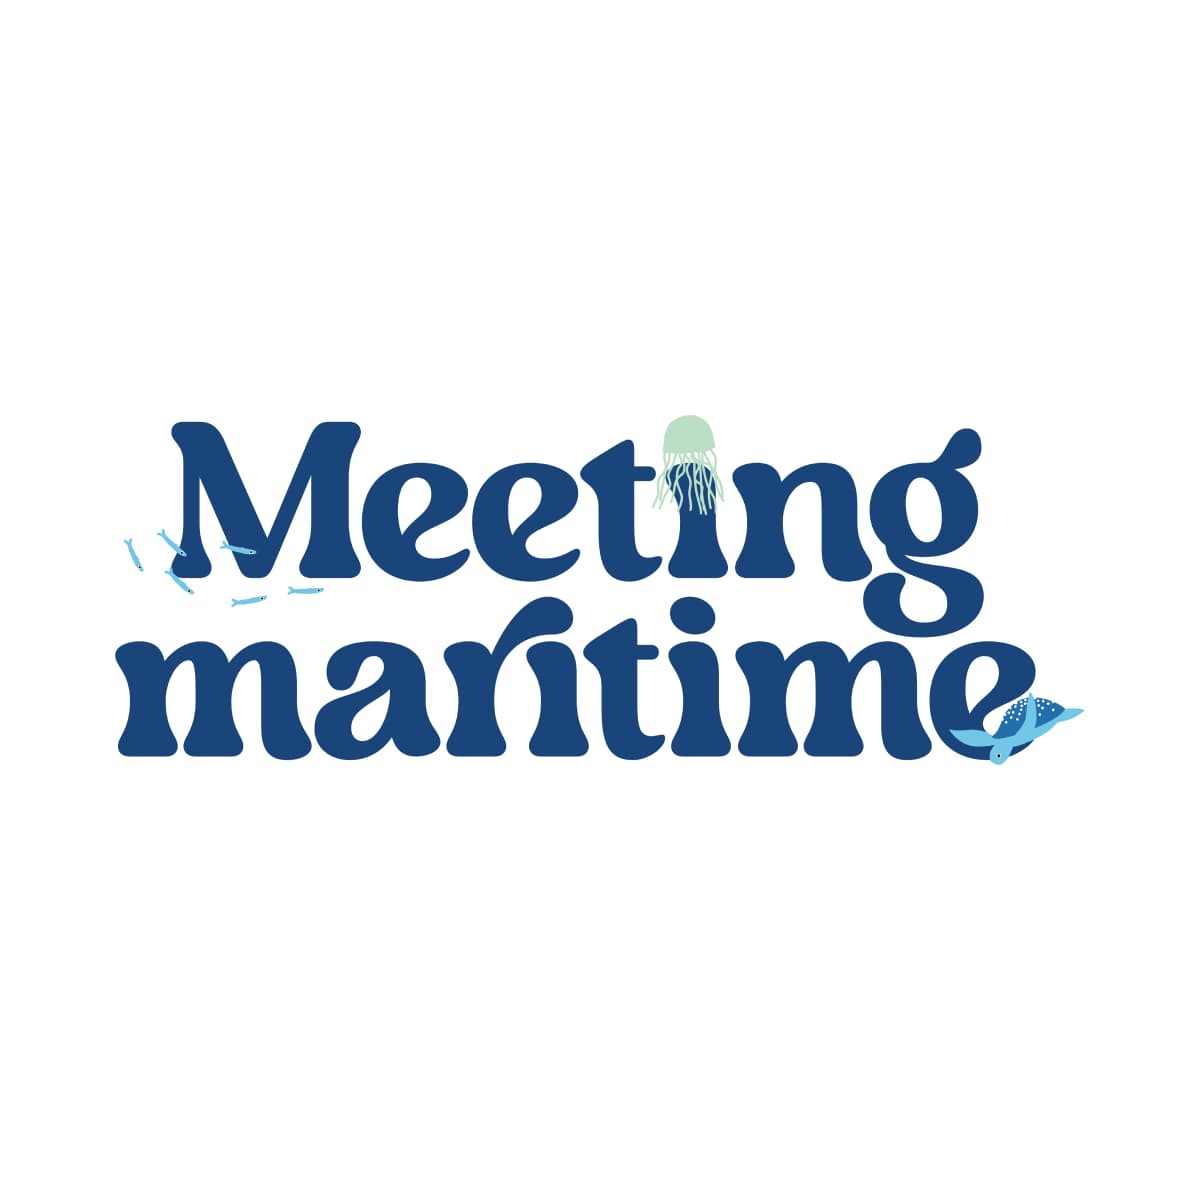 Maritime meeting dog collar